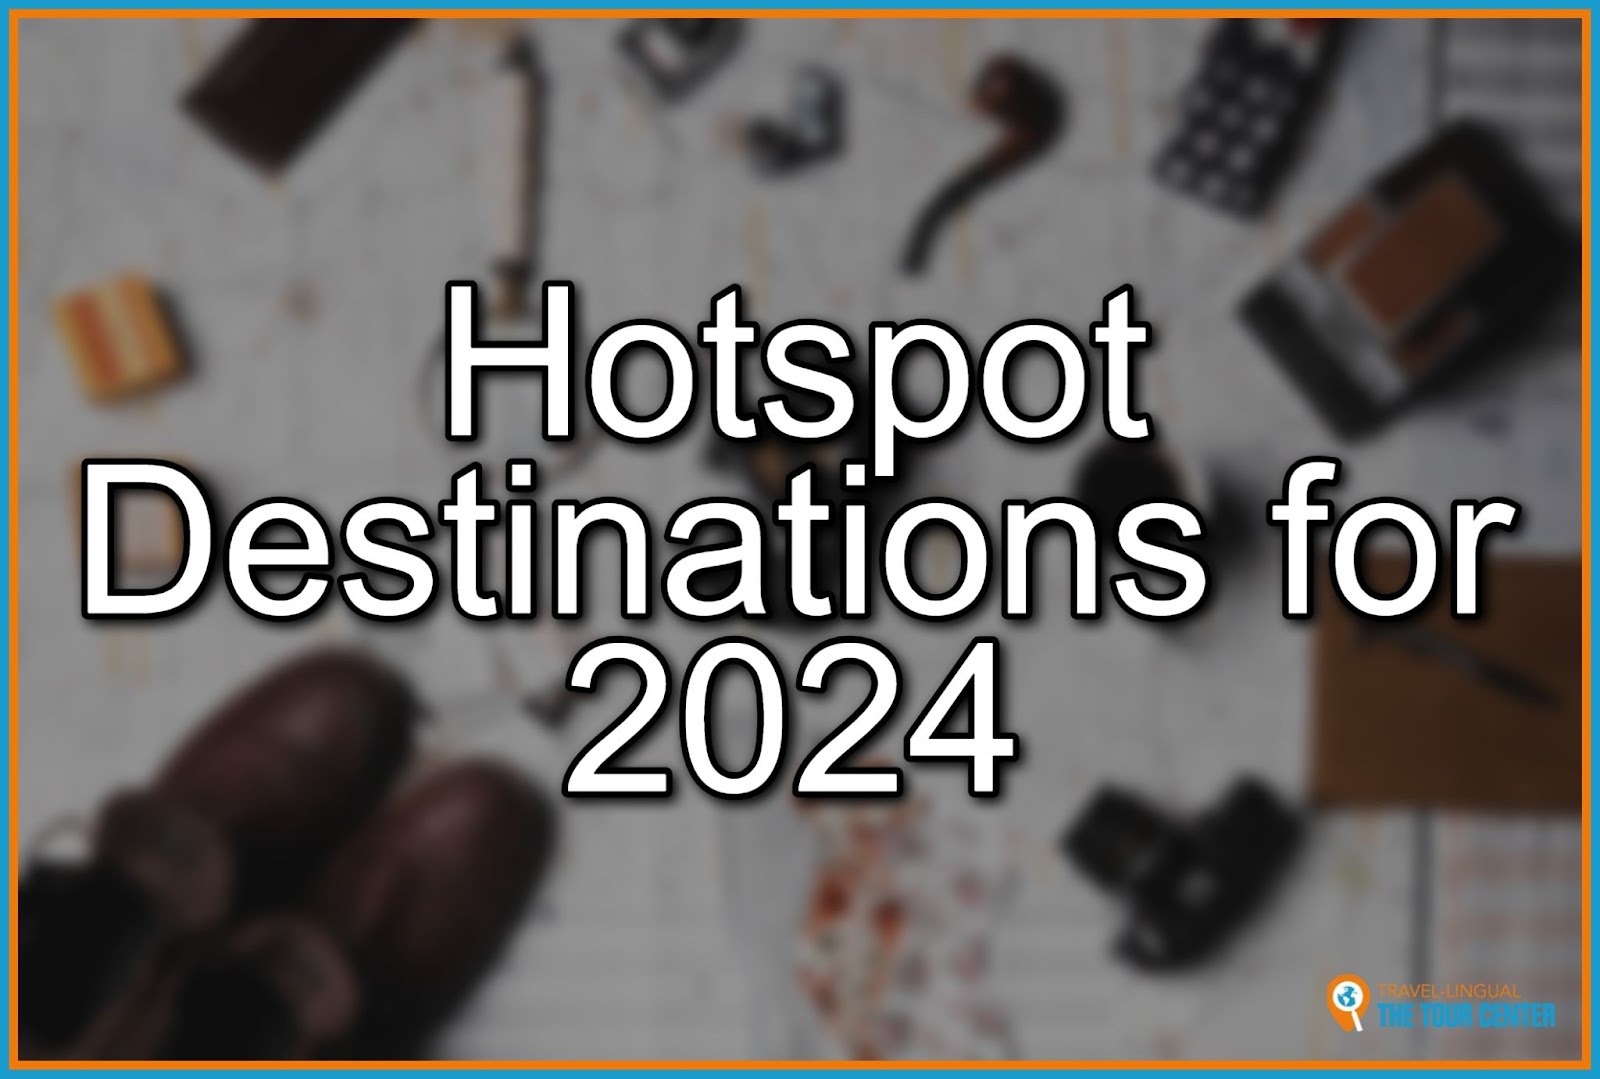 Hotspot Destinations for 2024
